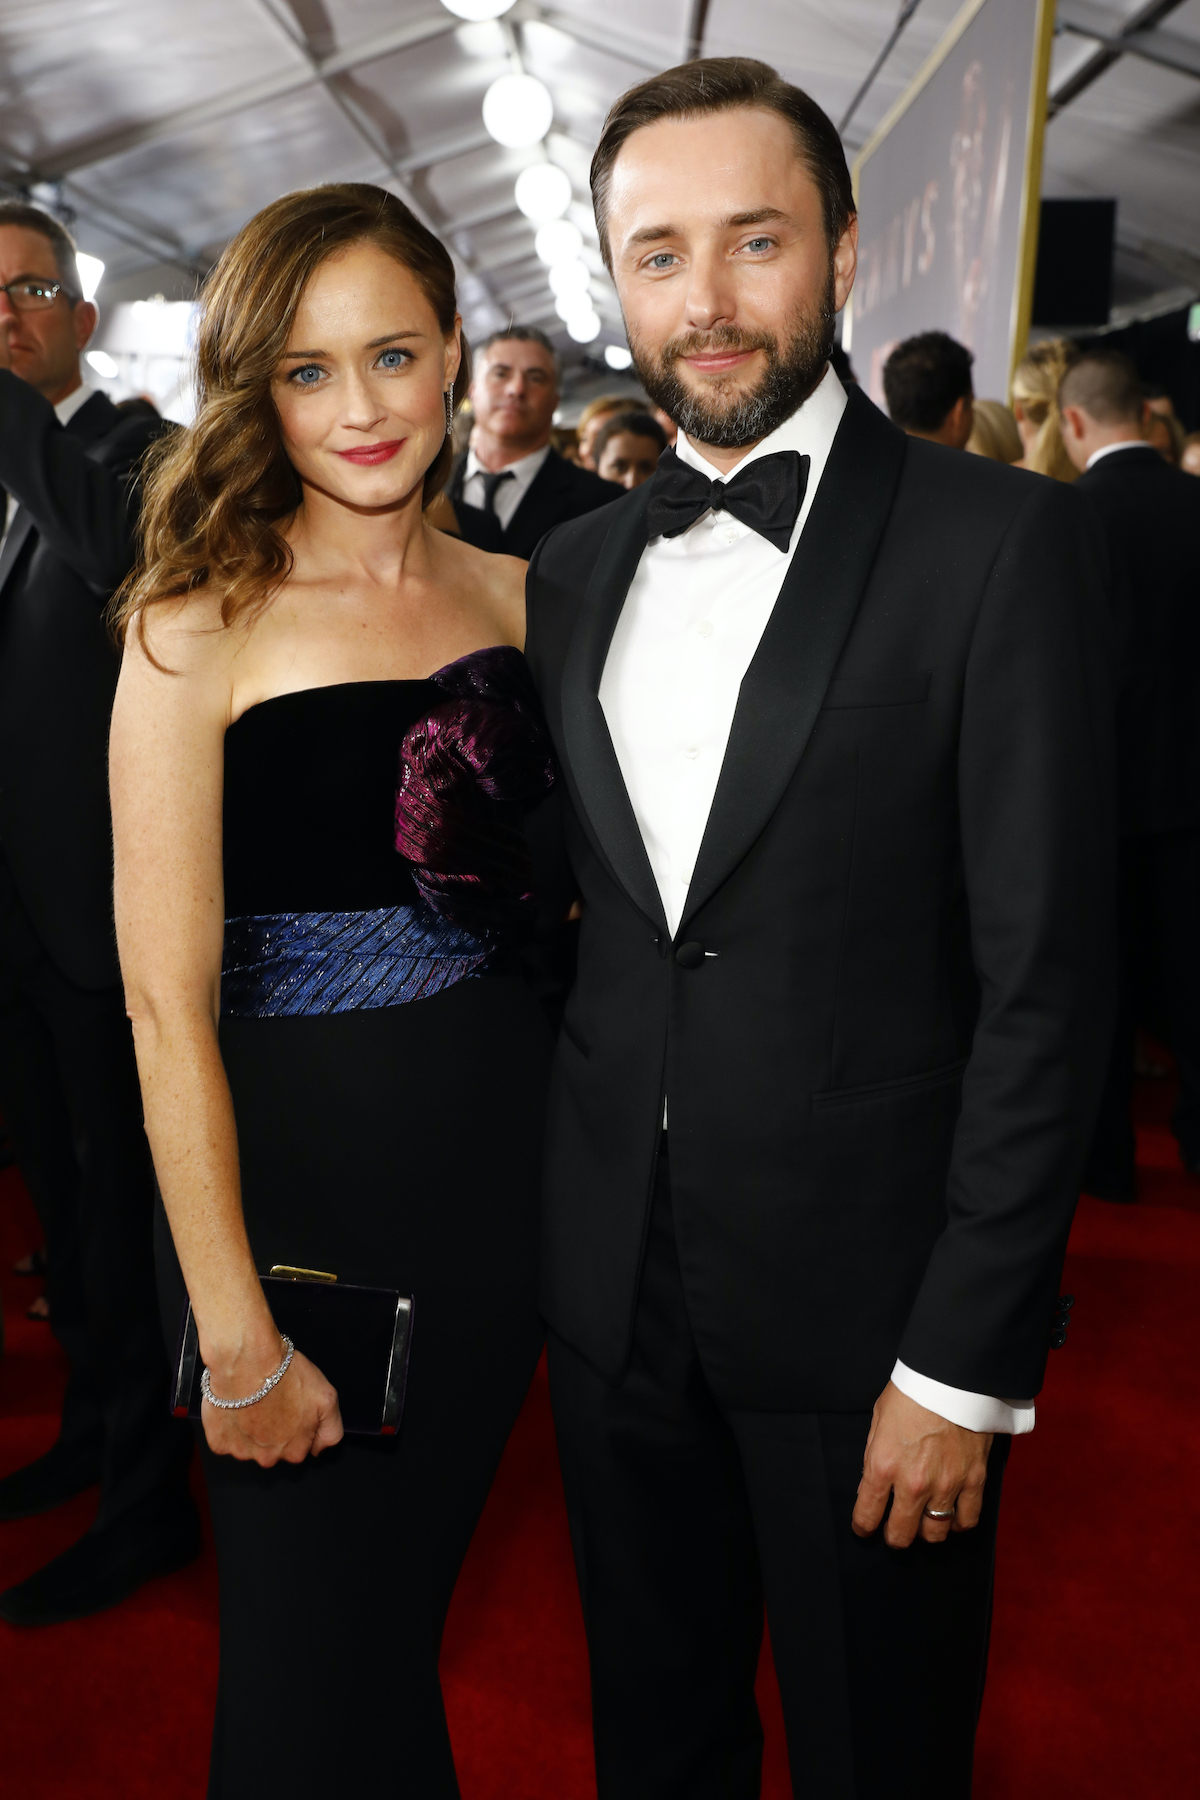 Alexis Bledel and Vincent Kartheiser at the 2017 Emmy Awards